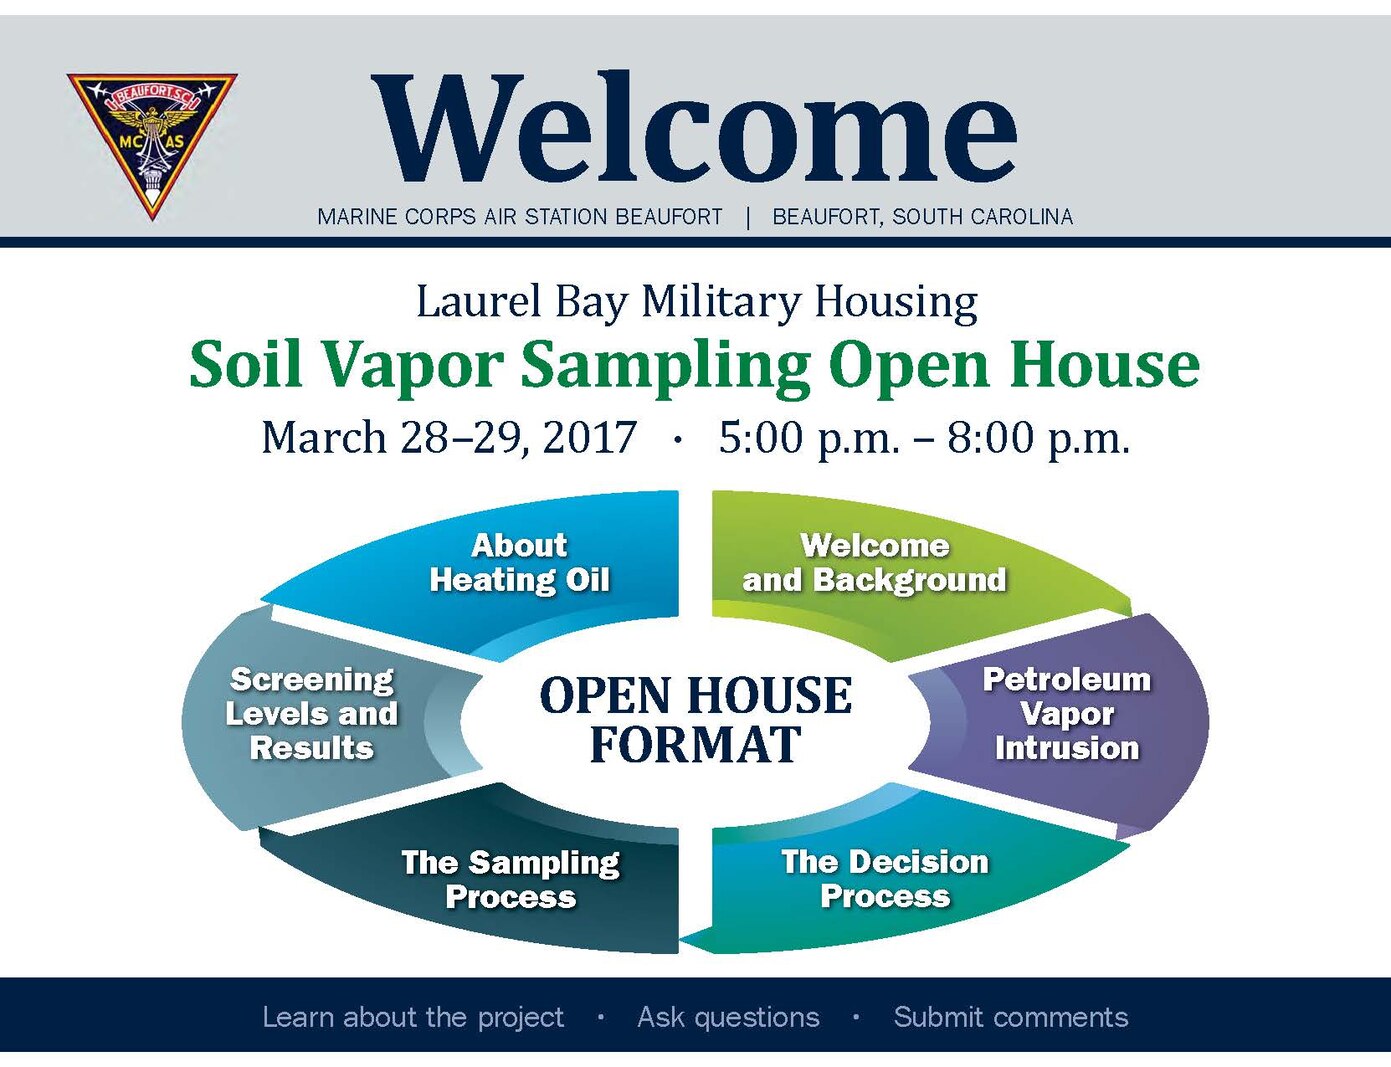 Laurel Bay Military Housing: Soil Vapor Sampling Open House 